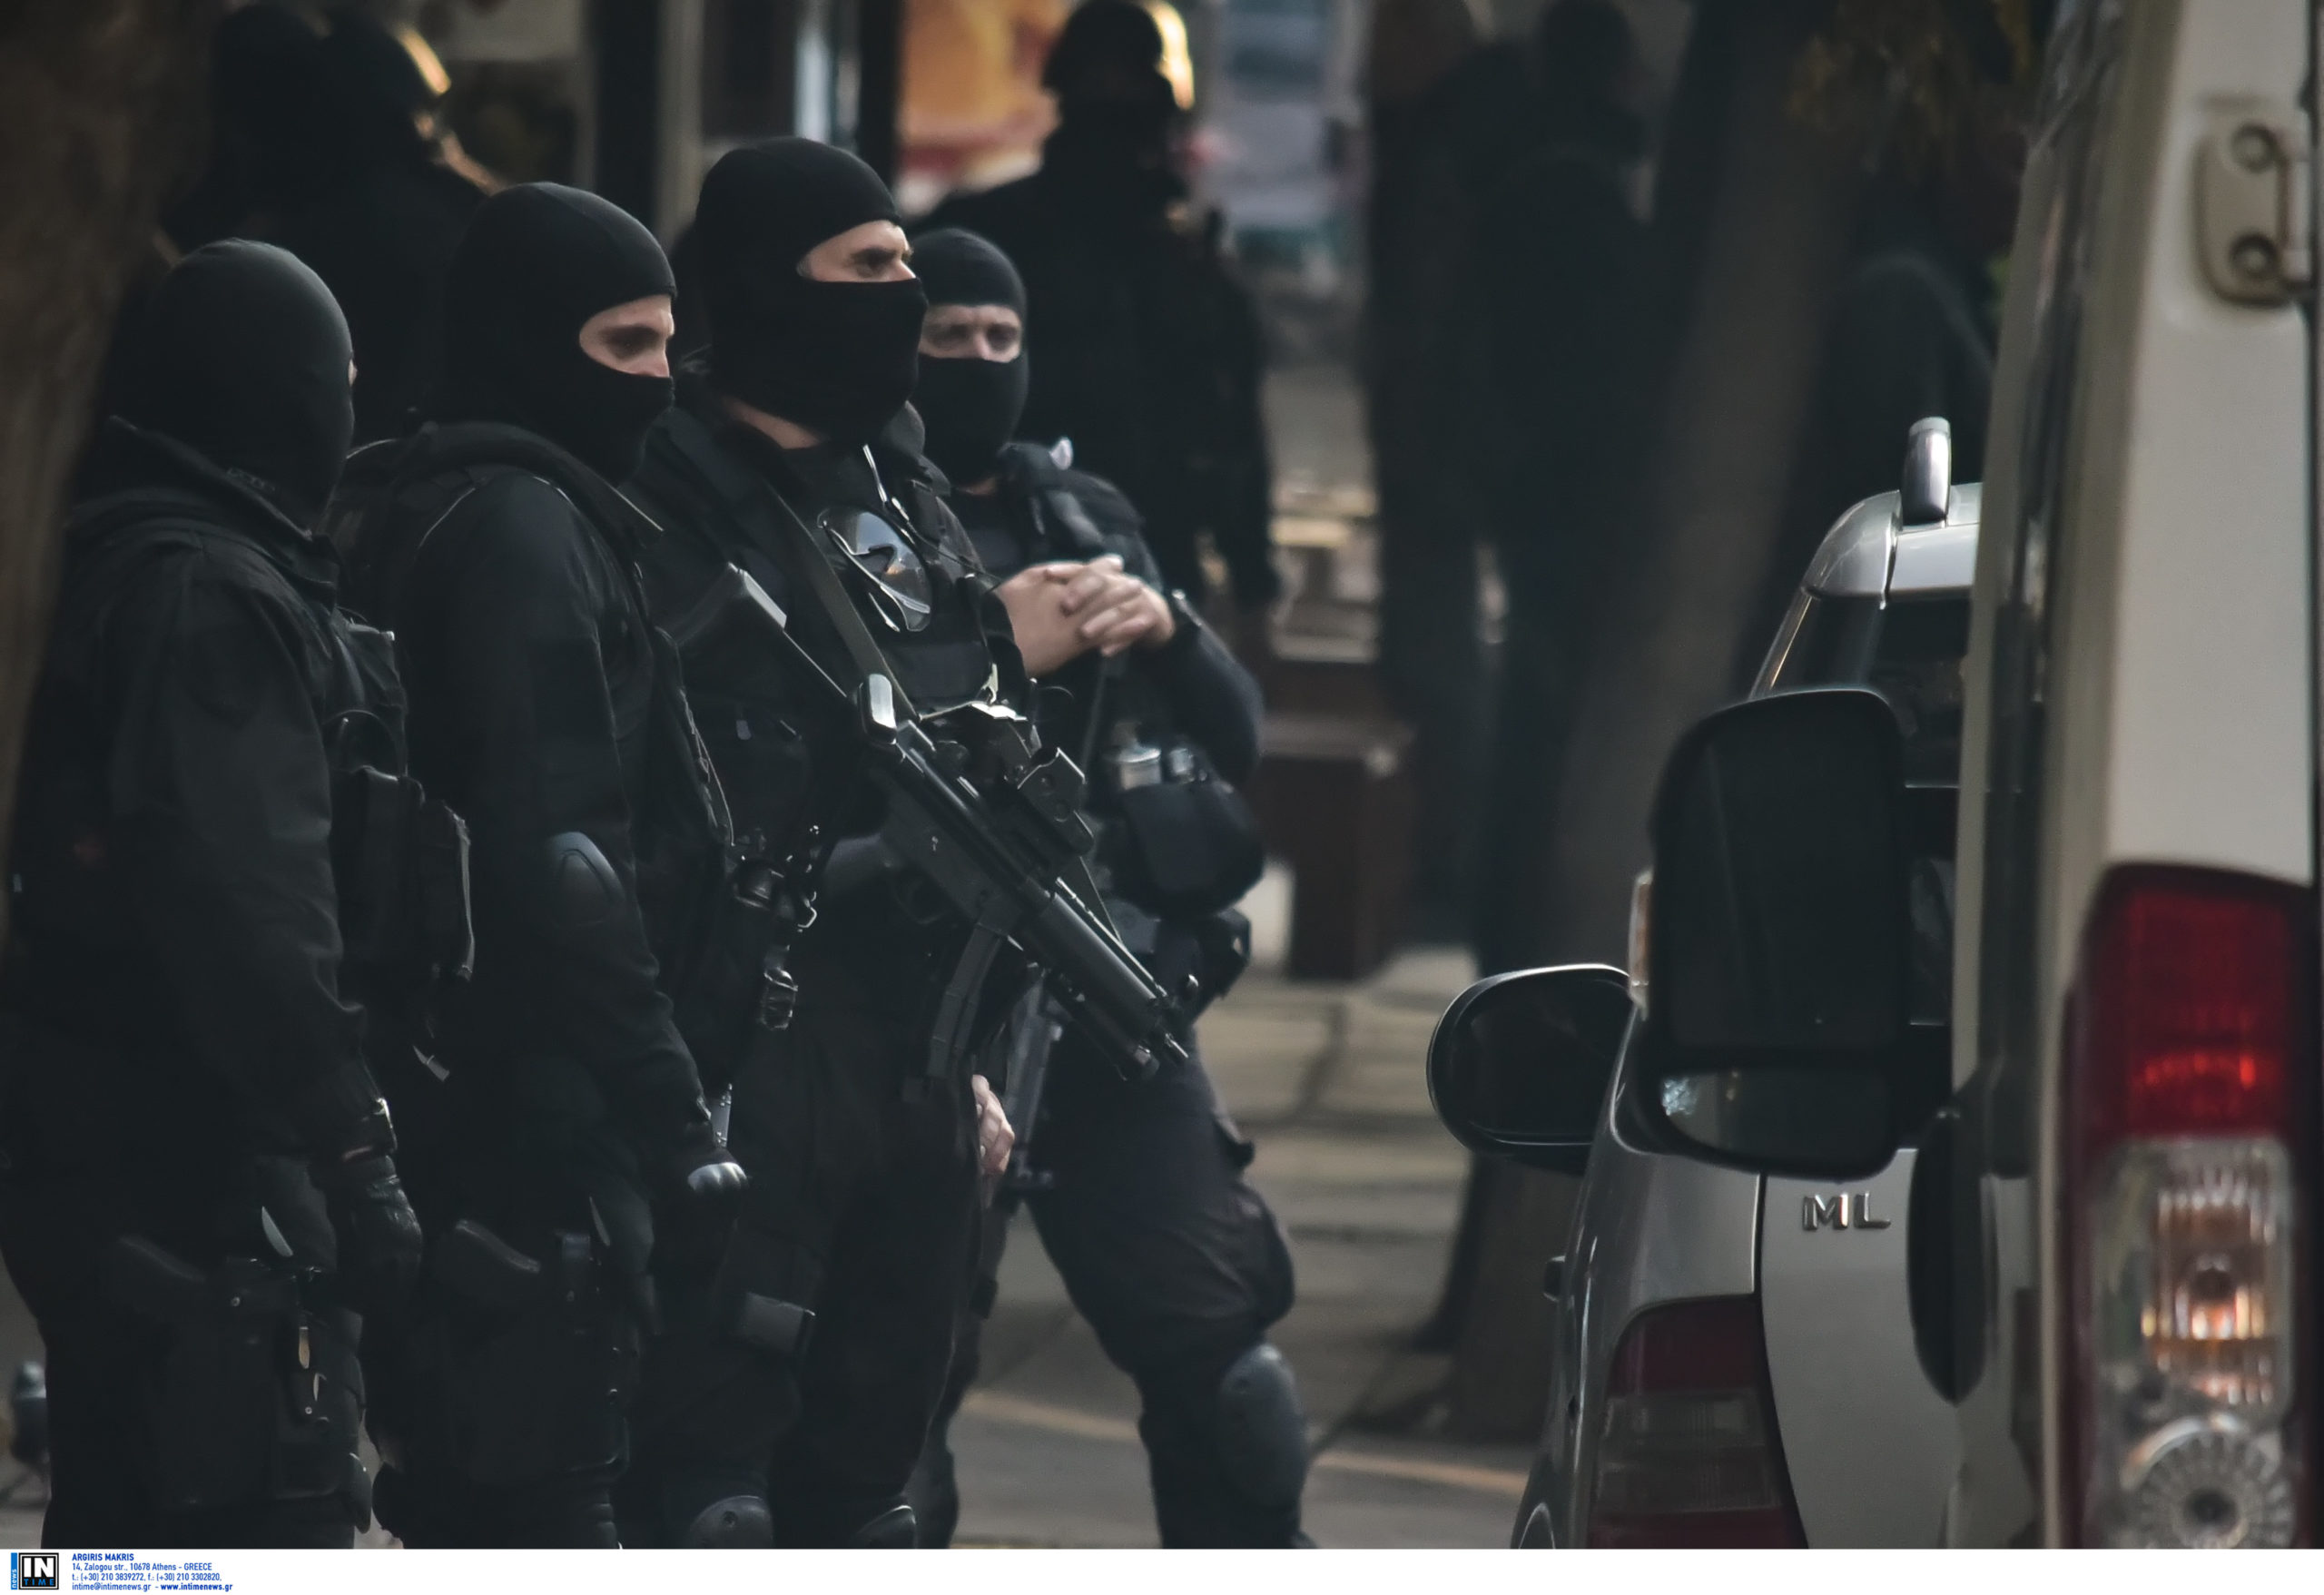 Μεγάλη επιχείρηση της Αντιτρομοκρατικής στην Αθήνα: 8 προσαγωγές για την έκρηξη στα Πετράλωνα και απειλές σε βάρος δικαστικών